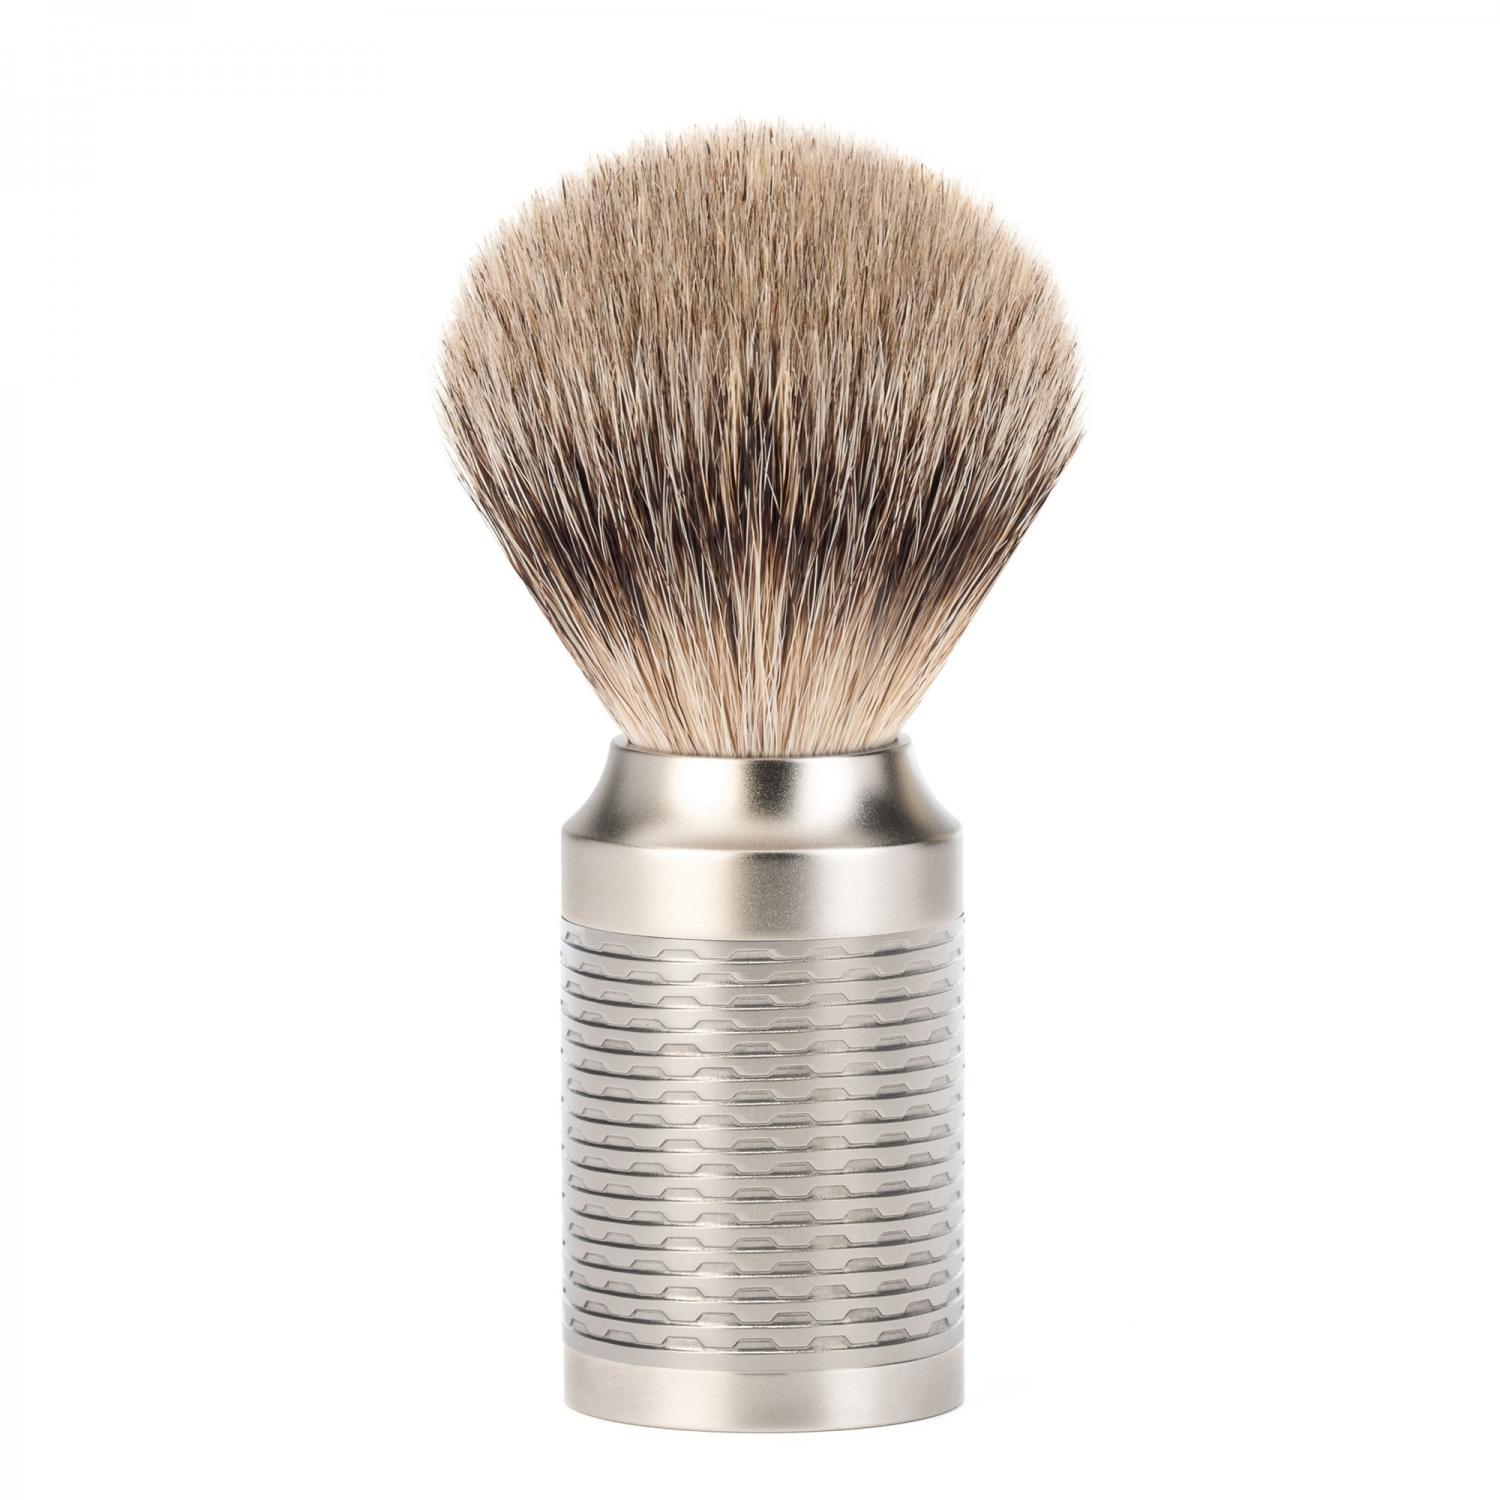 ROCCA Pure Matt Stainless Steel Silvertip Badger Shaving Brush